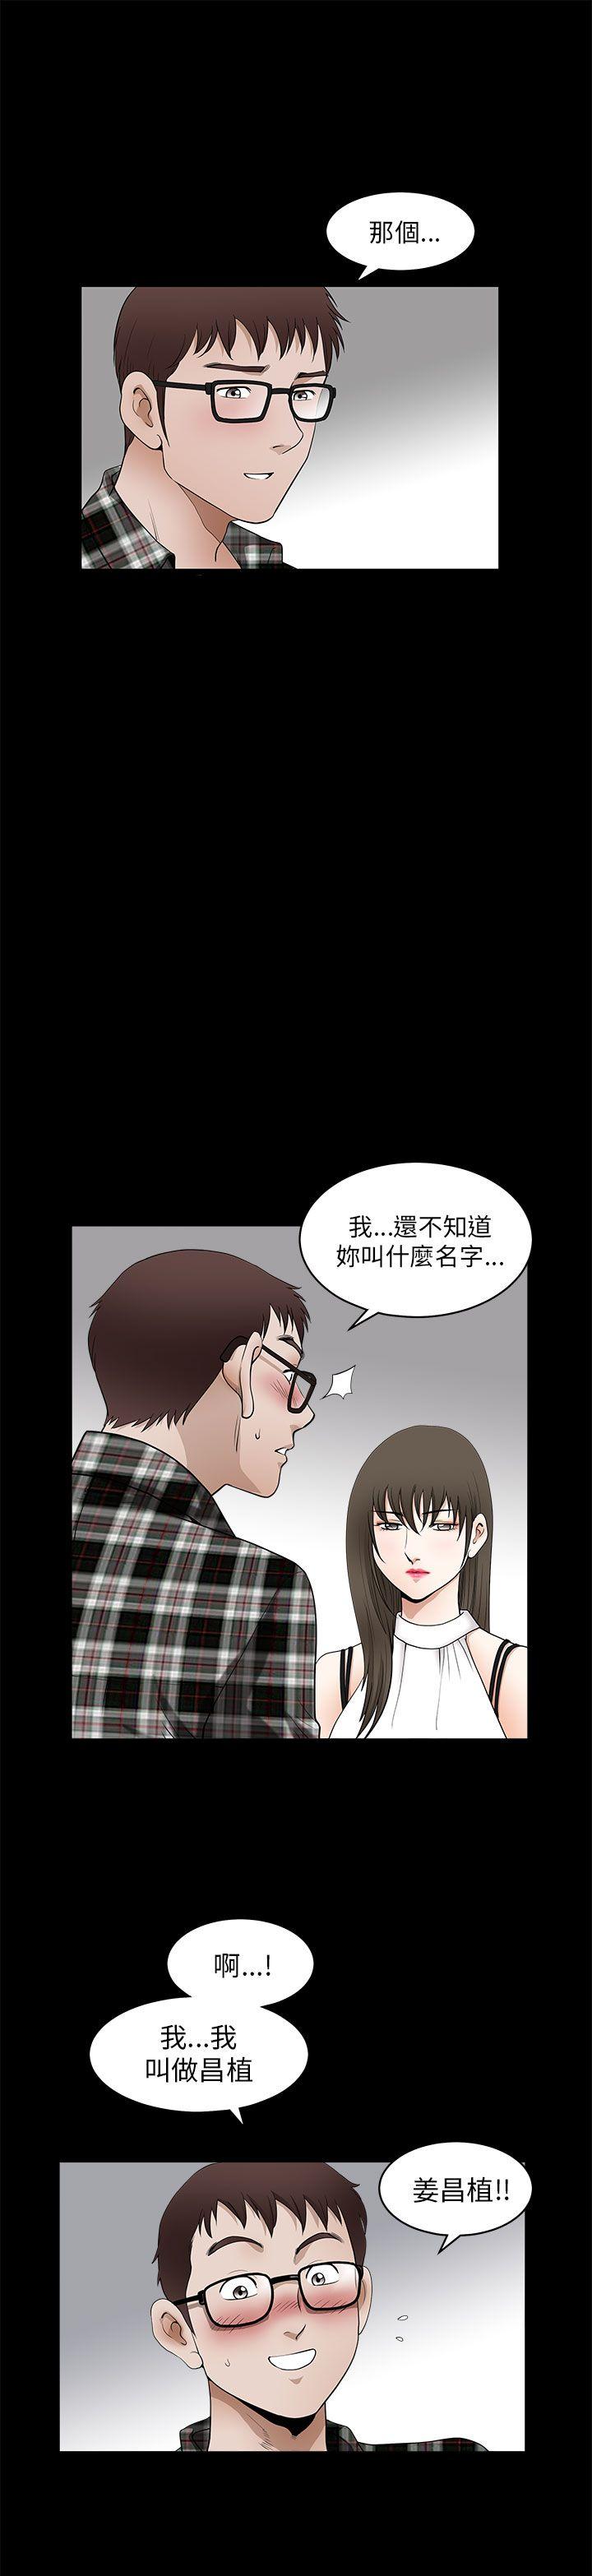 韩国污漫画 煦娜 第11话 28